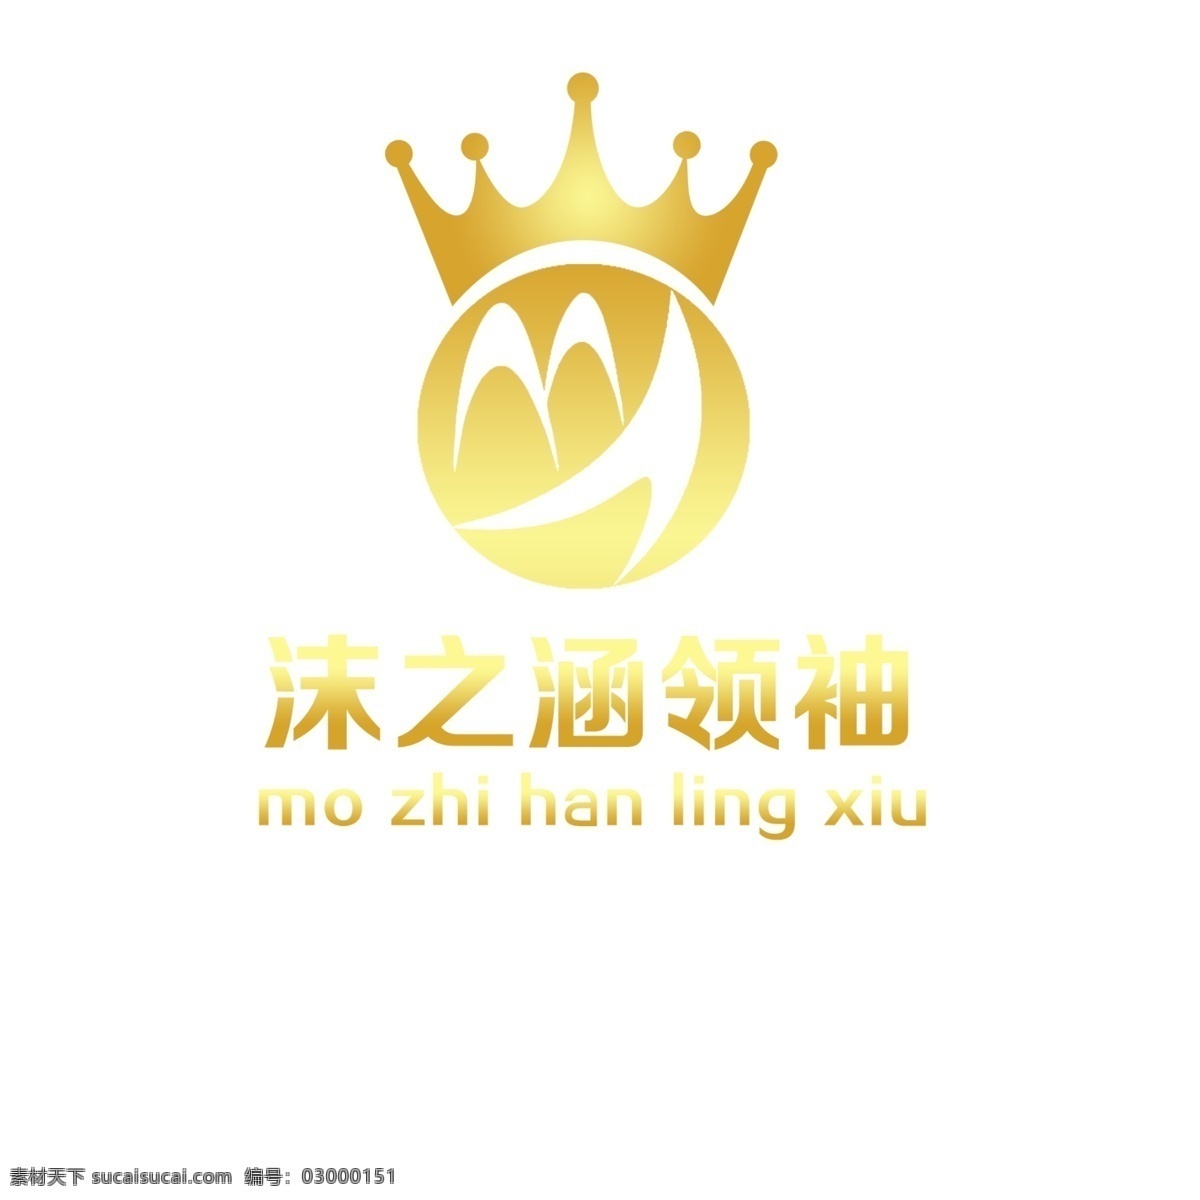 沫 涵 领袖 logo 商贸 有限公司 领袖精英 图标图像设计 紫色